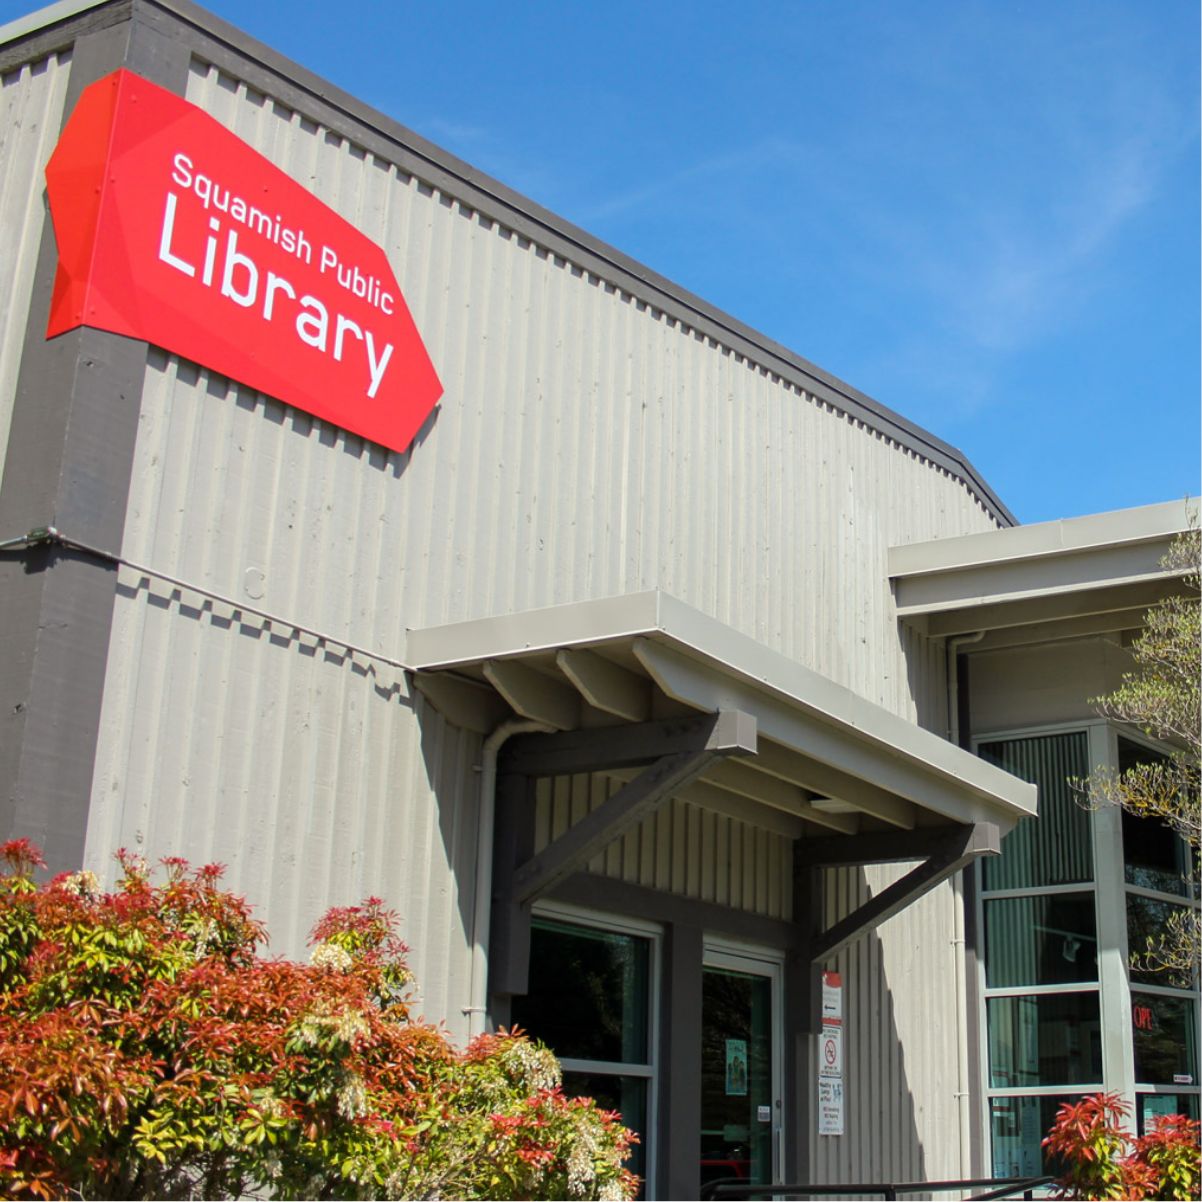 Squamish Way Finding Facility Signage: Squamish Public Library